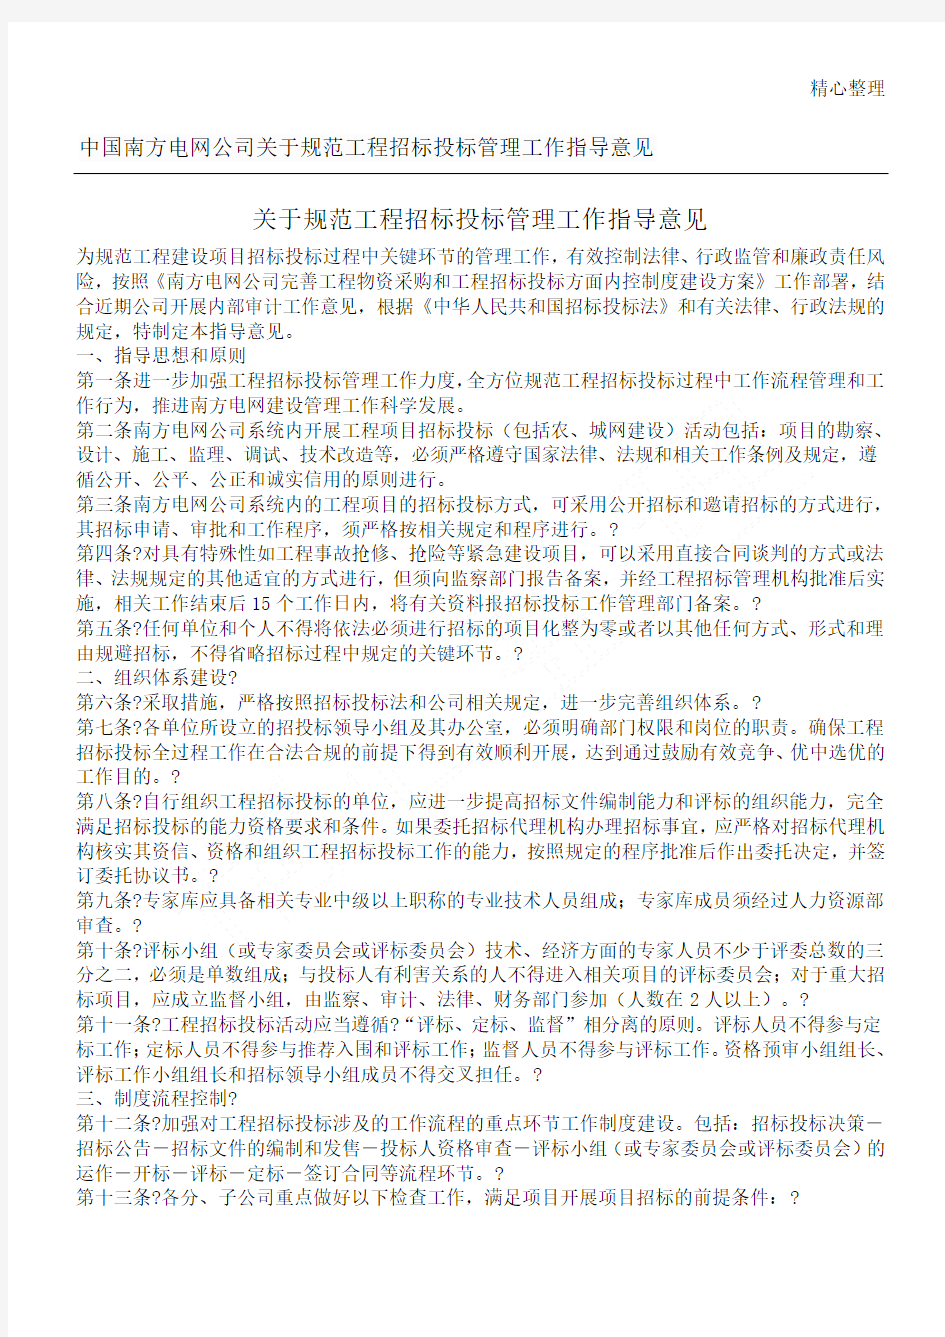 中国南方电网公司关于规范工程招标投标管理工作指导意见